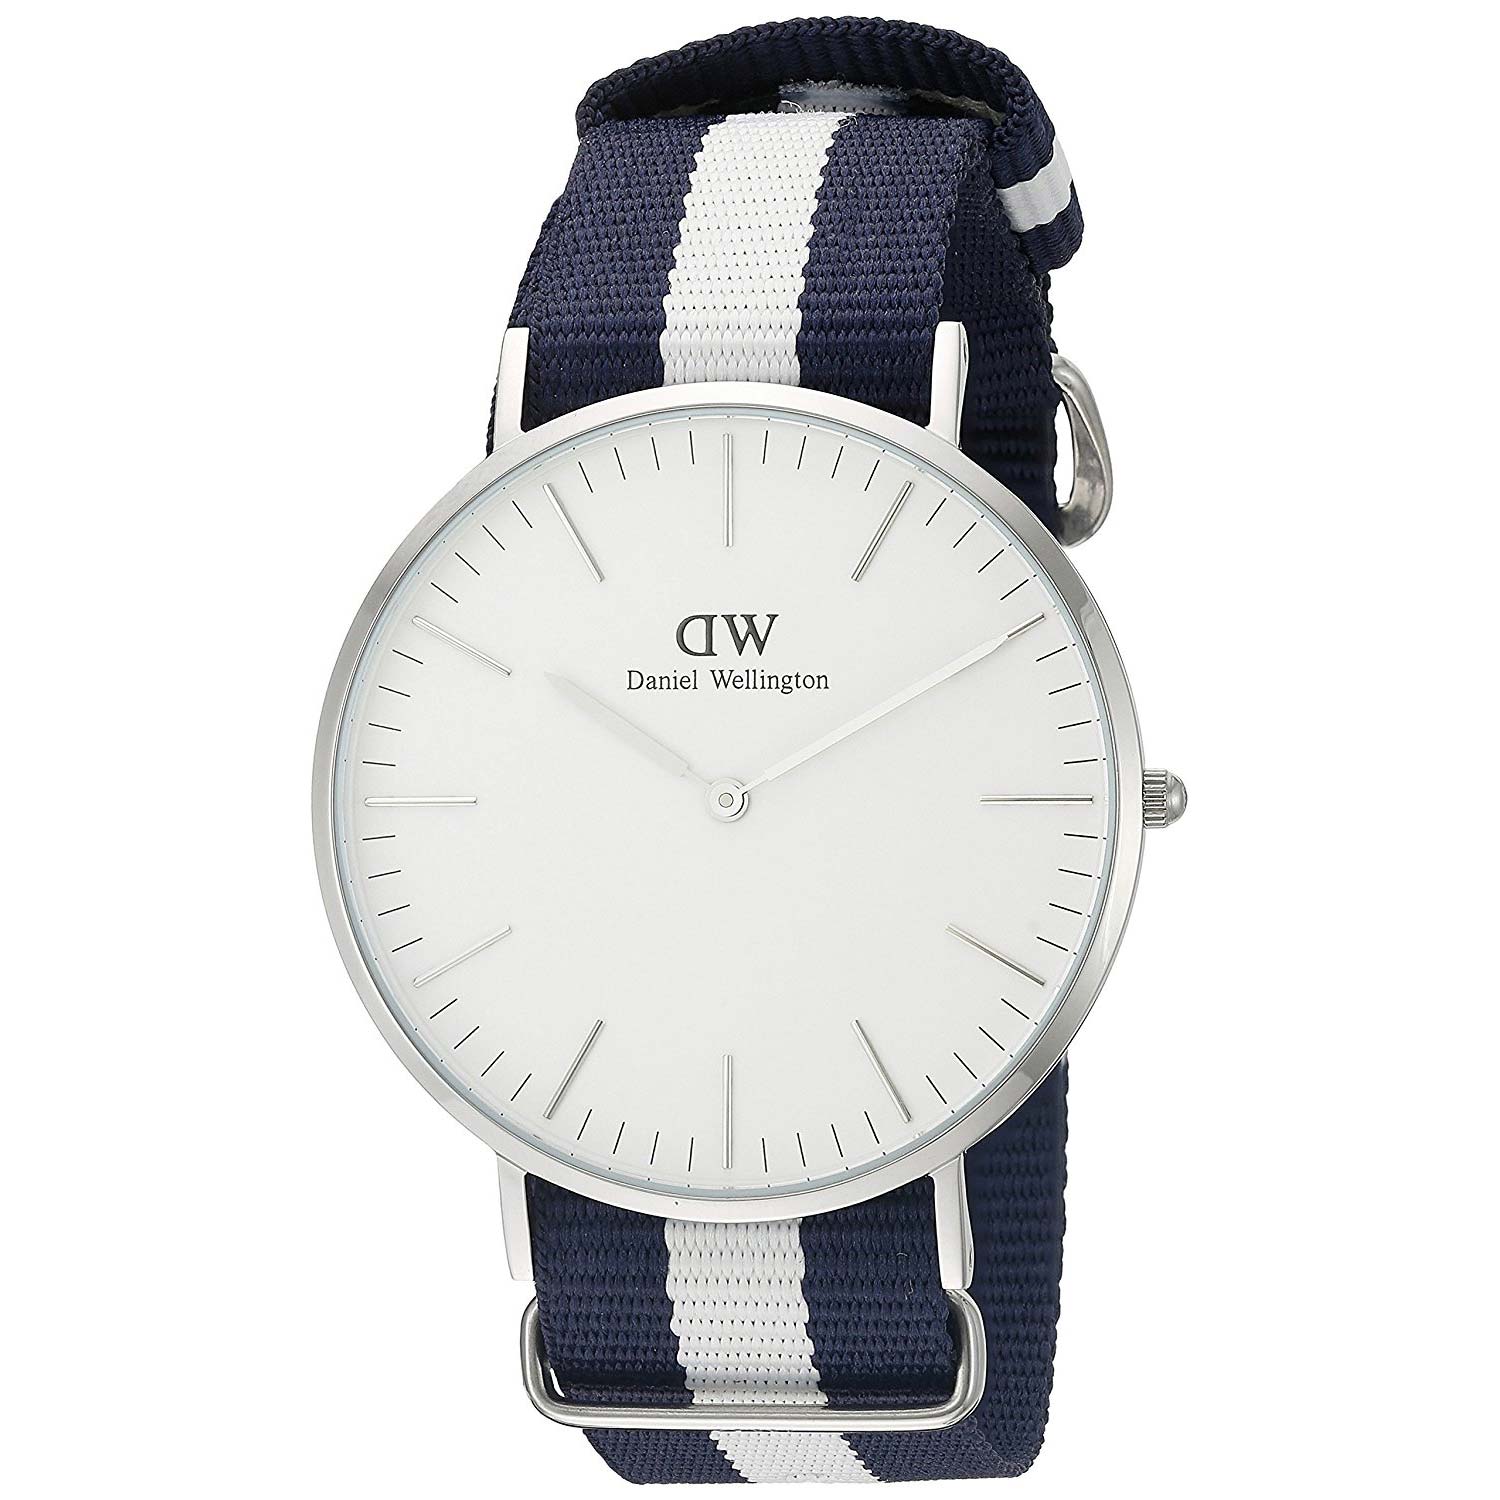 ingenieur niet voldoende Noord Daniel Wellington Glasgow Armbanduhr 0953DW mit blau-weißem Nato-Armband -  Herrenuhren - Armbanduhren für Männer